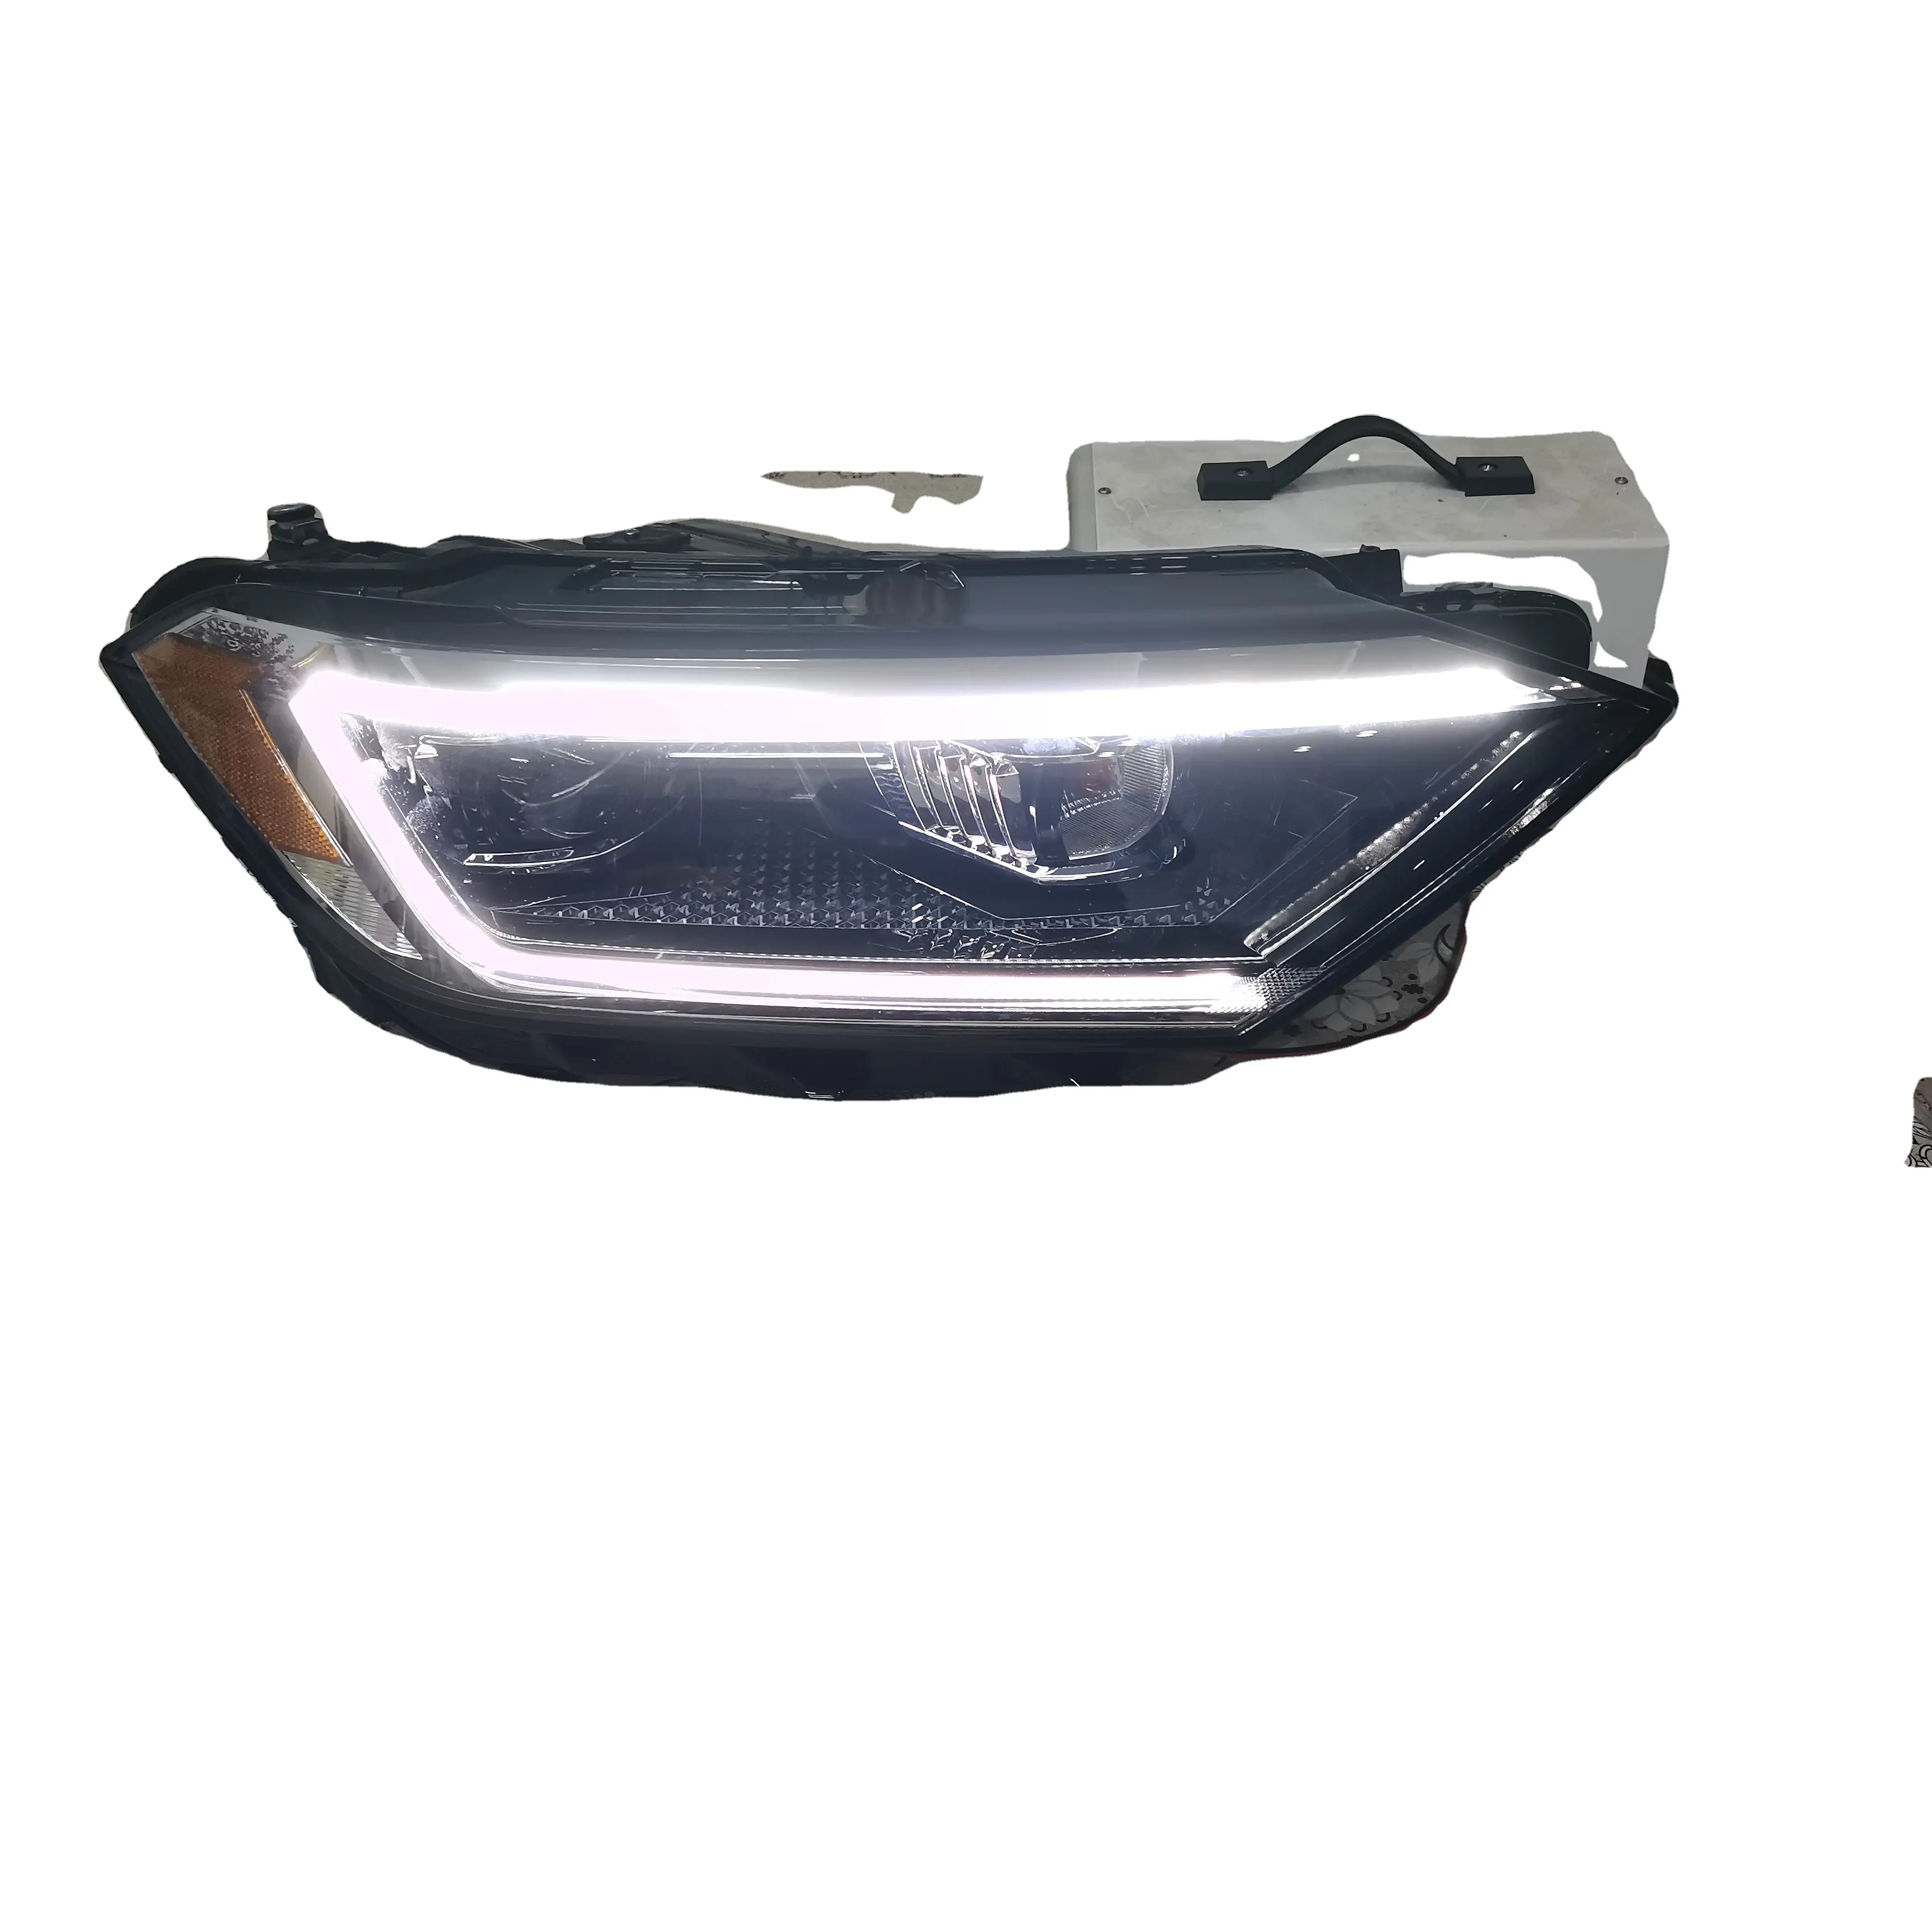 Autoteile Hochwertiger Scheinwerfer Scheinwerfer Voll LED für VW Jetta